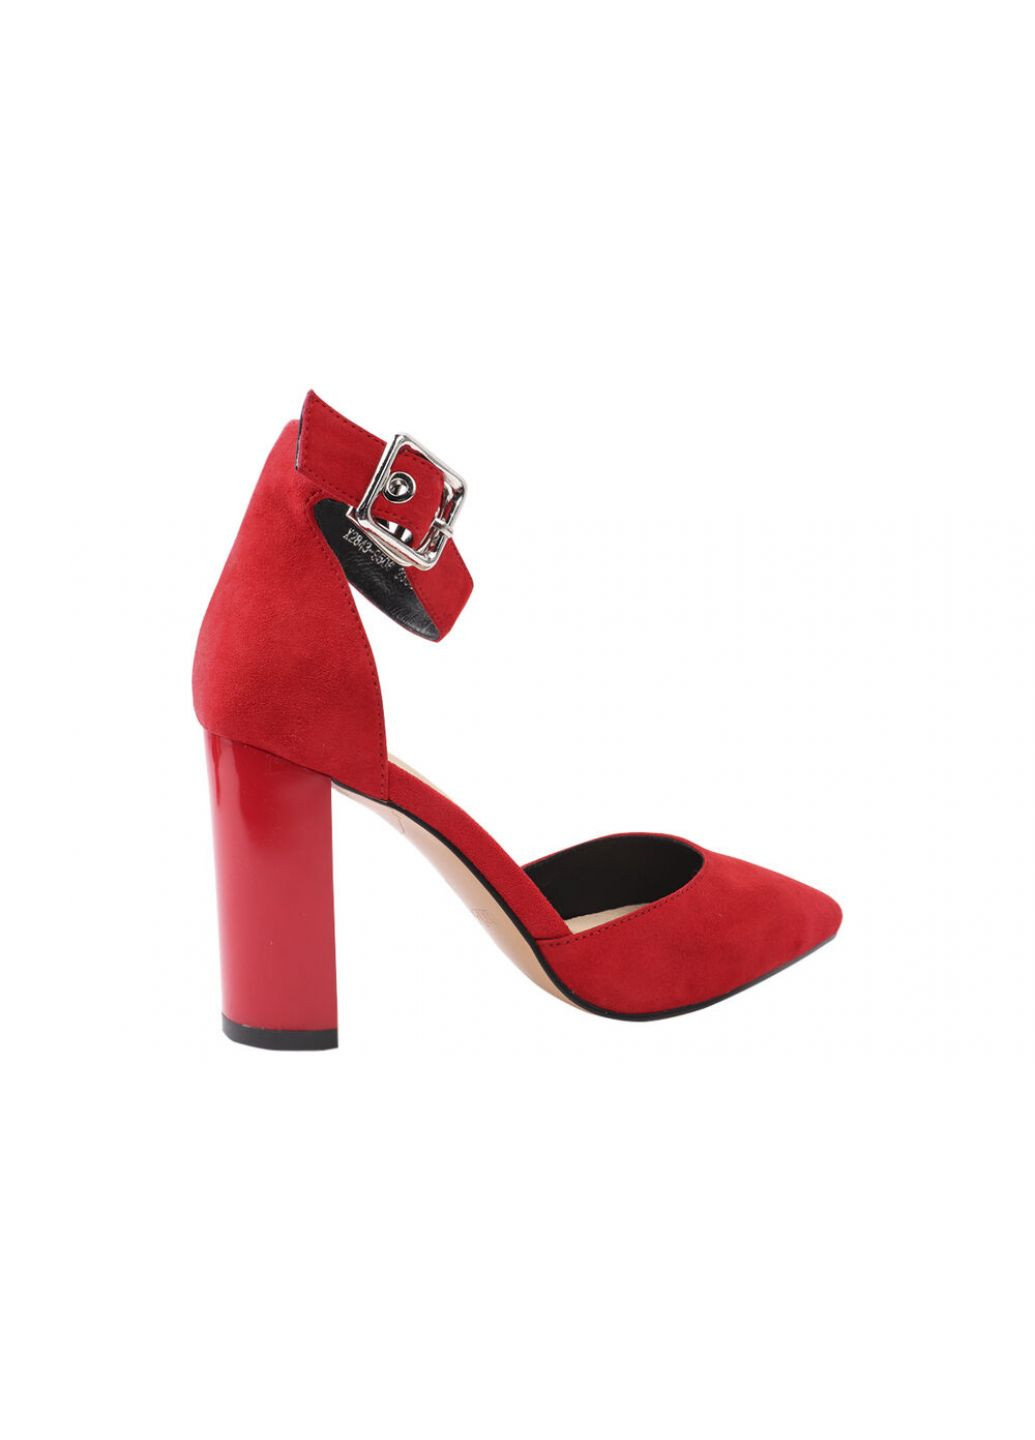 Туфли женские из натуральной замши, на большом каблуке, красные, Erisses